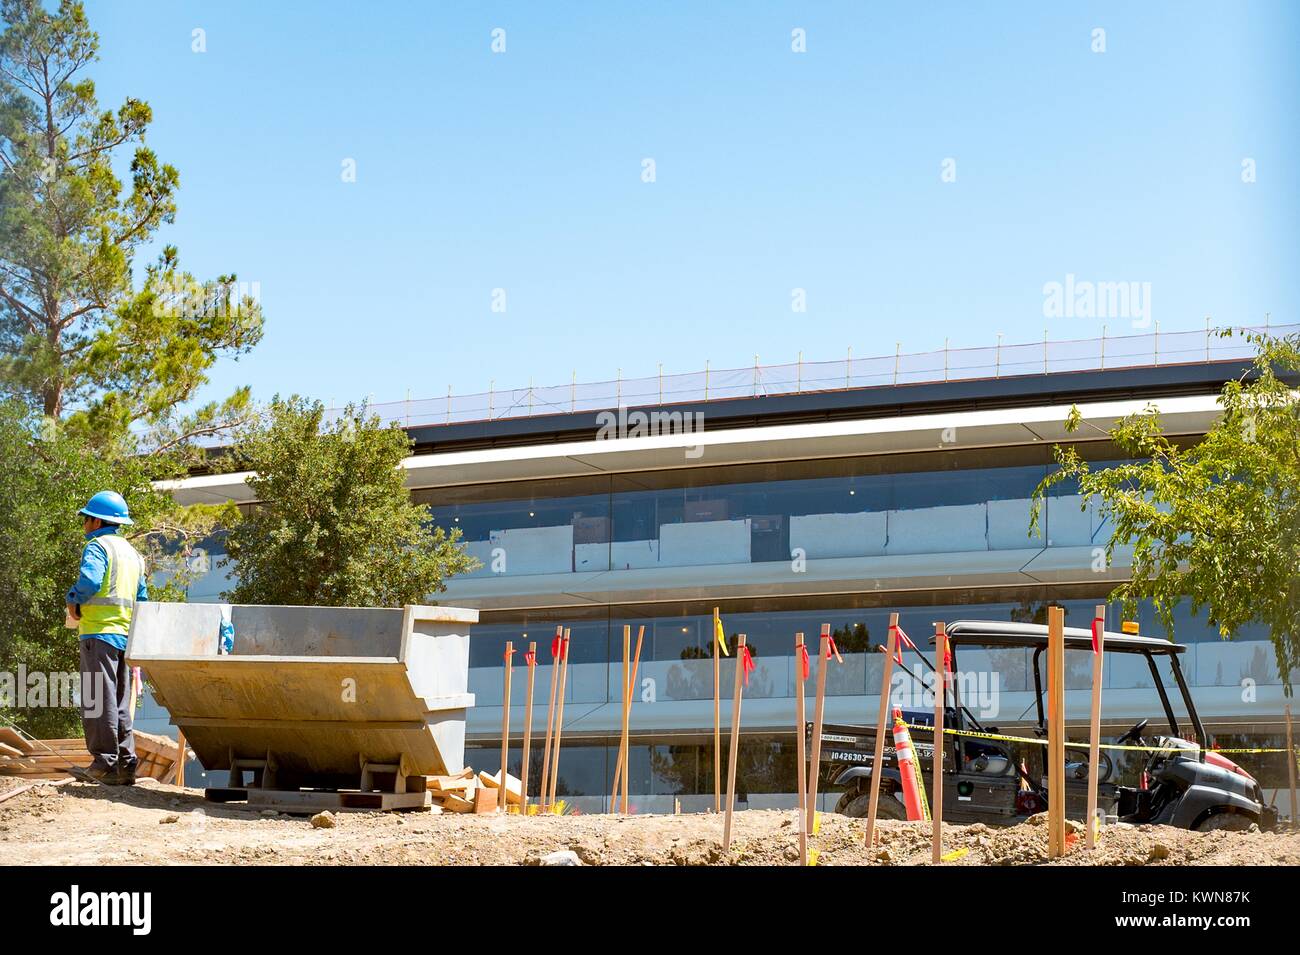 Un travailleur de la construction dans un gilet et casque bleu se distingue avec l'équipement de construction en face d'une partie de l'Apple Park, connu familièrement comme "le vaisseau spatial", le nouveau quartier général d'Apple Inc dans la Silicon Valley ville de Cupertino, Californie, 25 juillet 2017. Banque D'Images